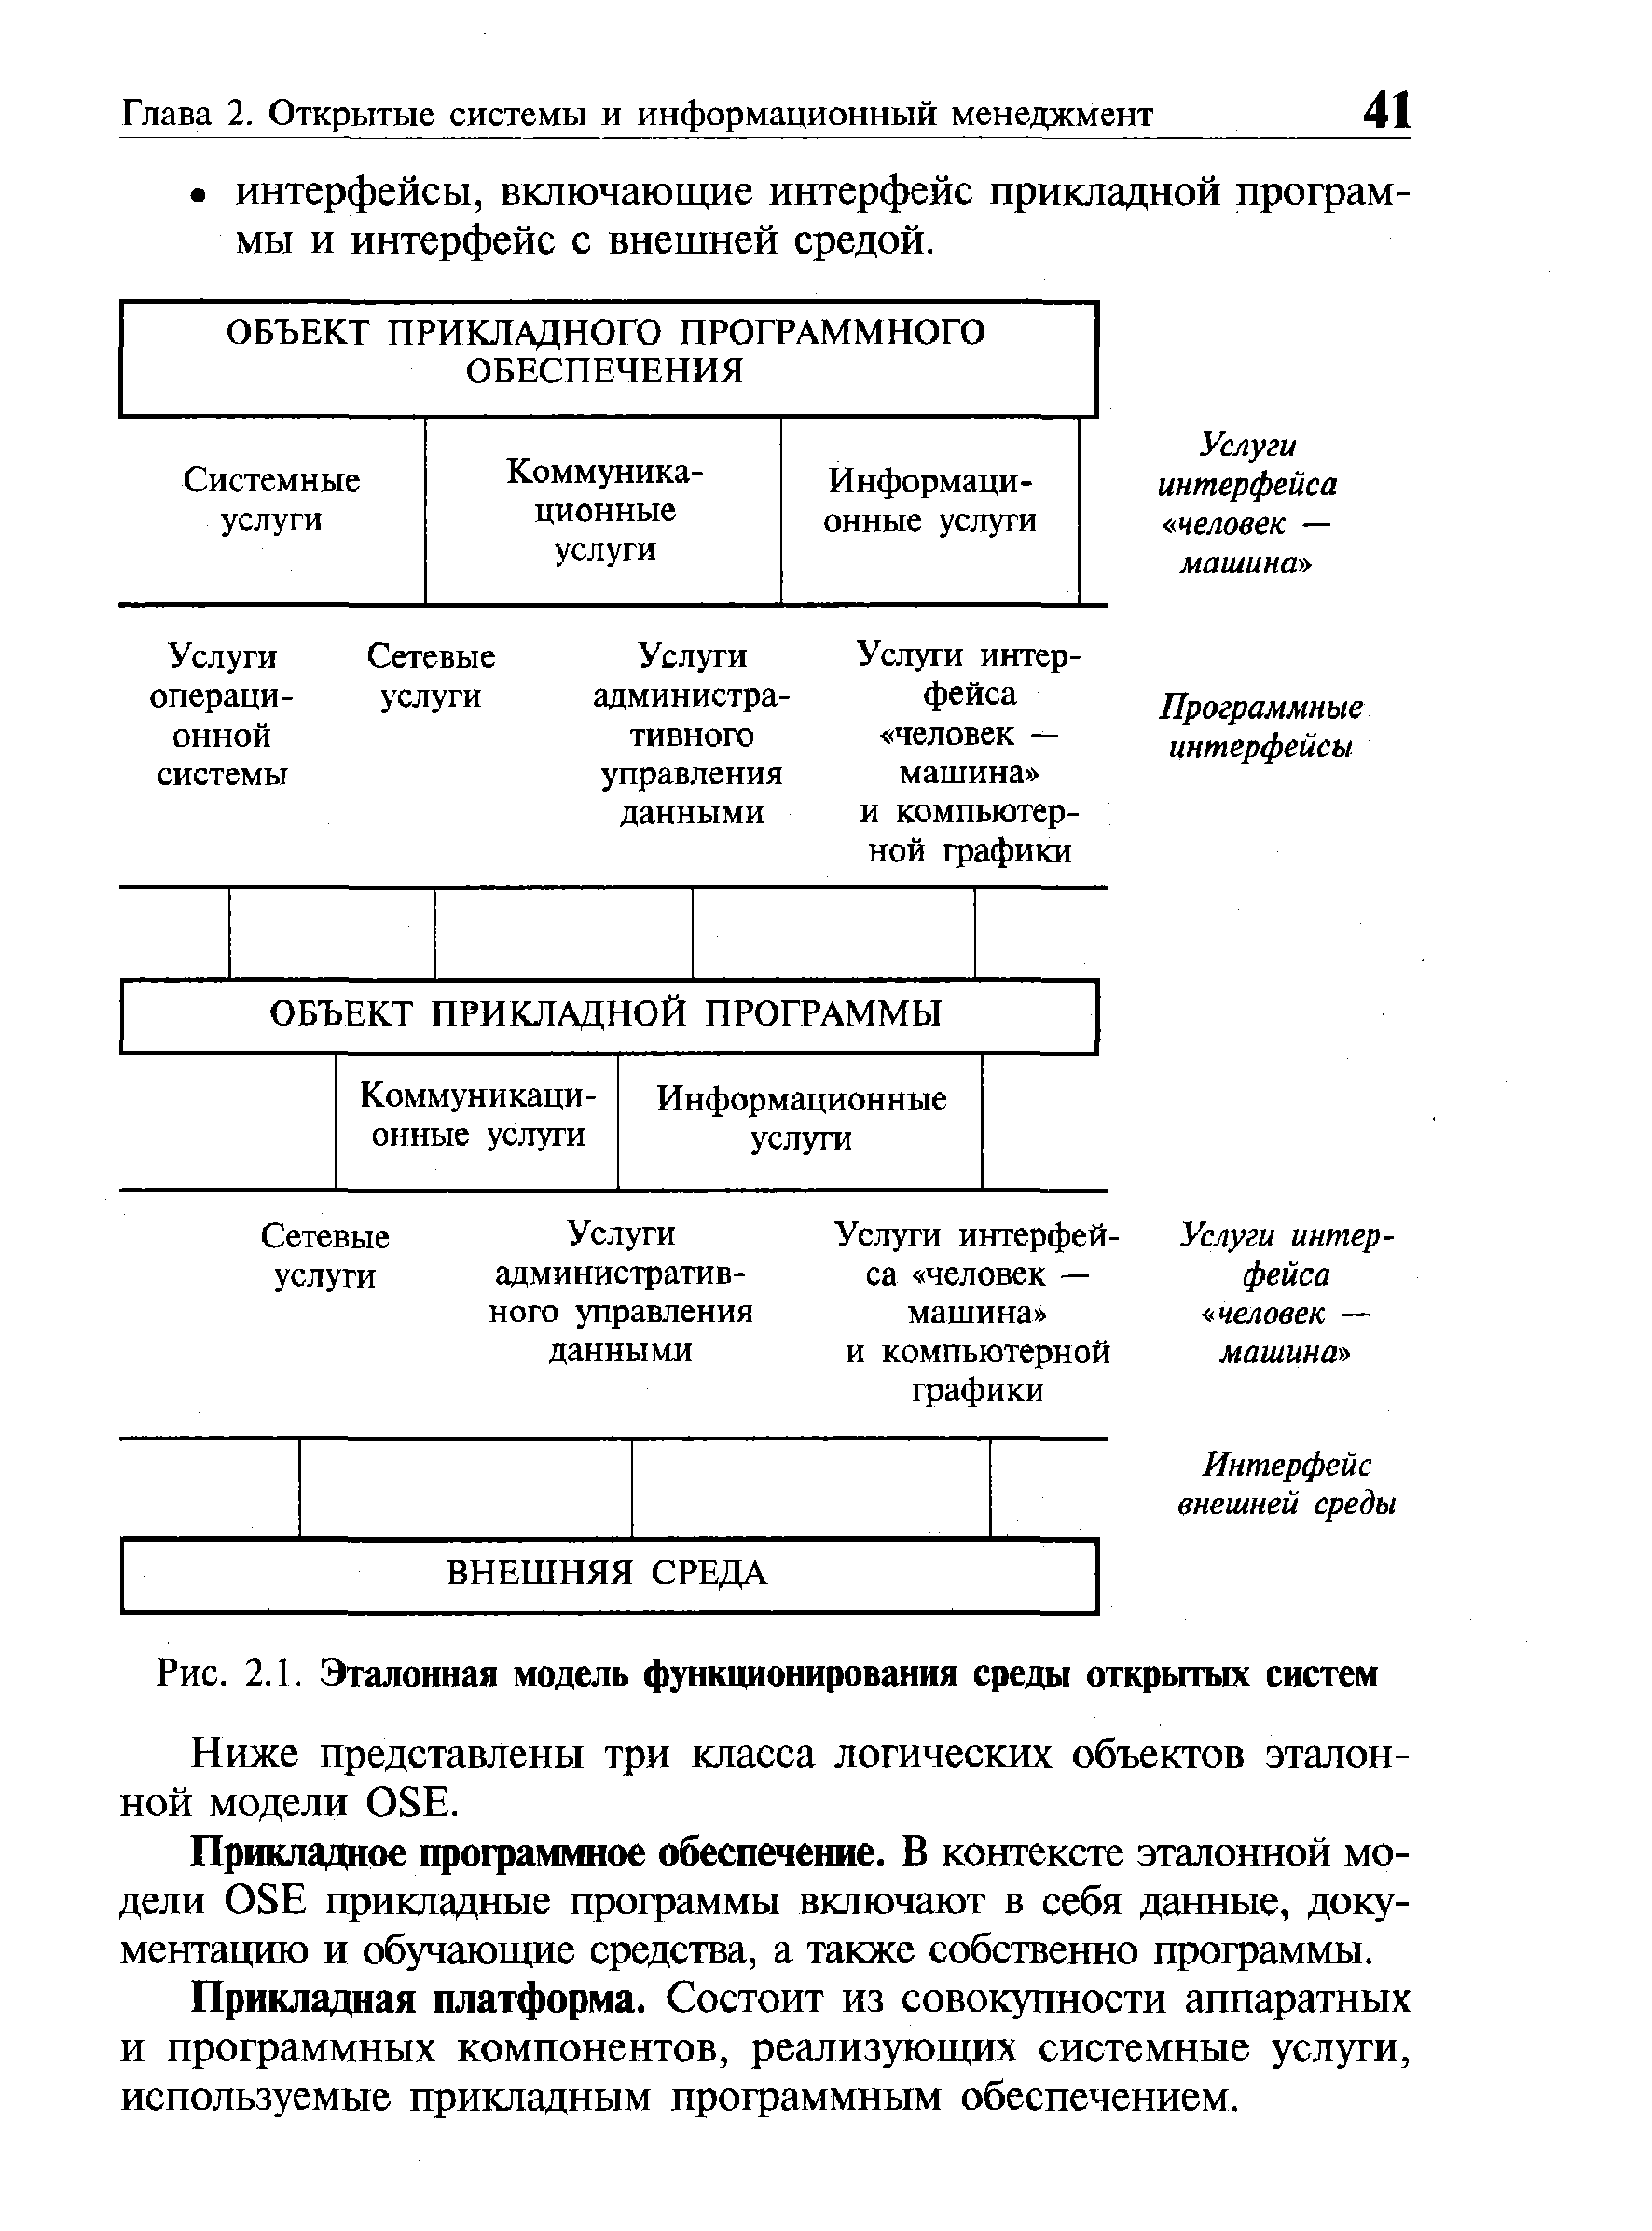 Рис. 2.1. Эталонная модель функционирования среды открытых систем
